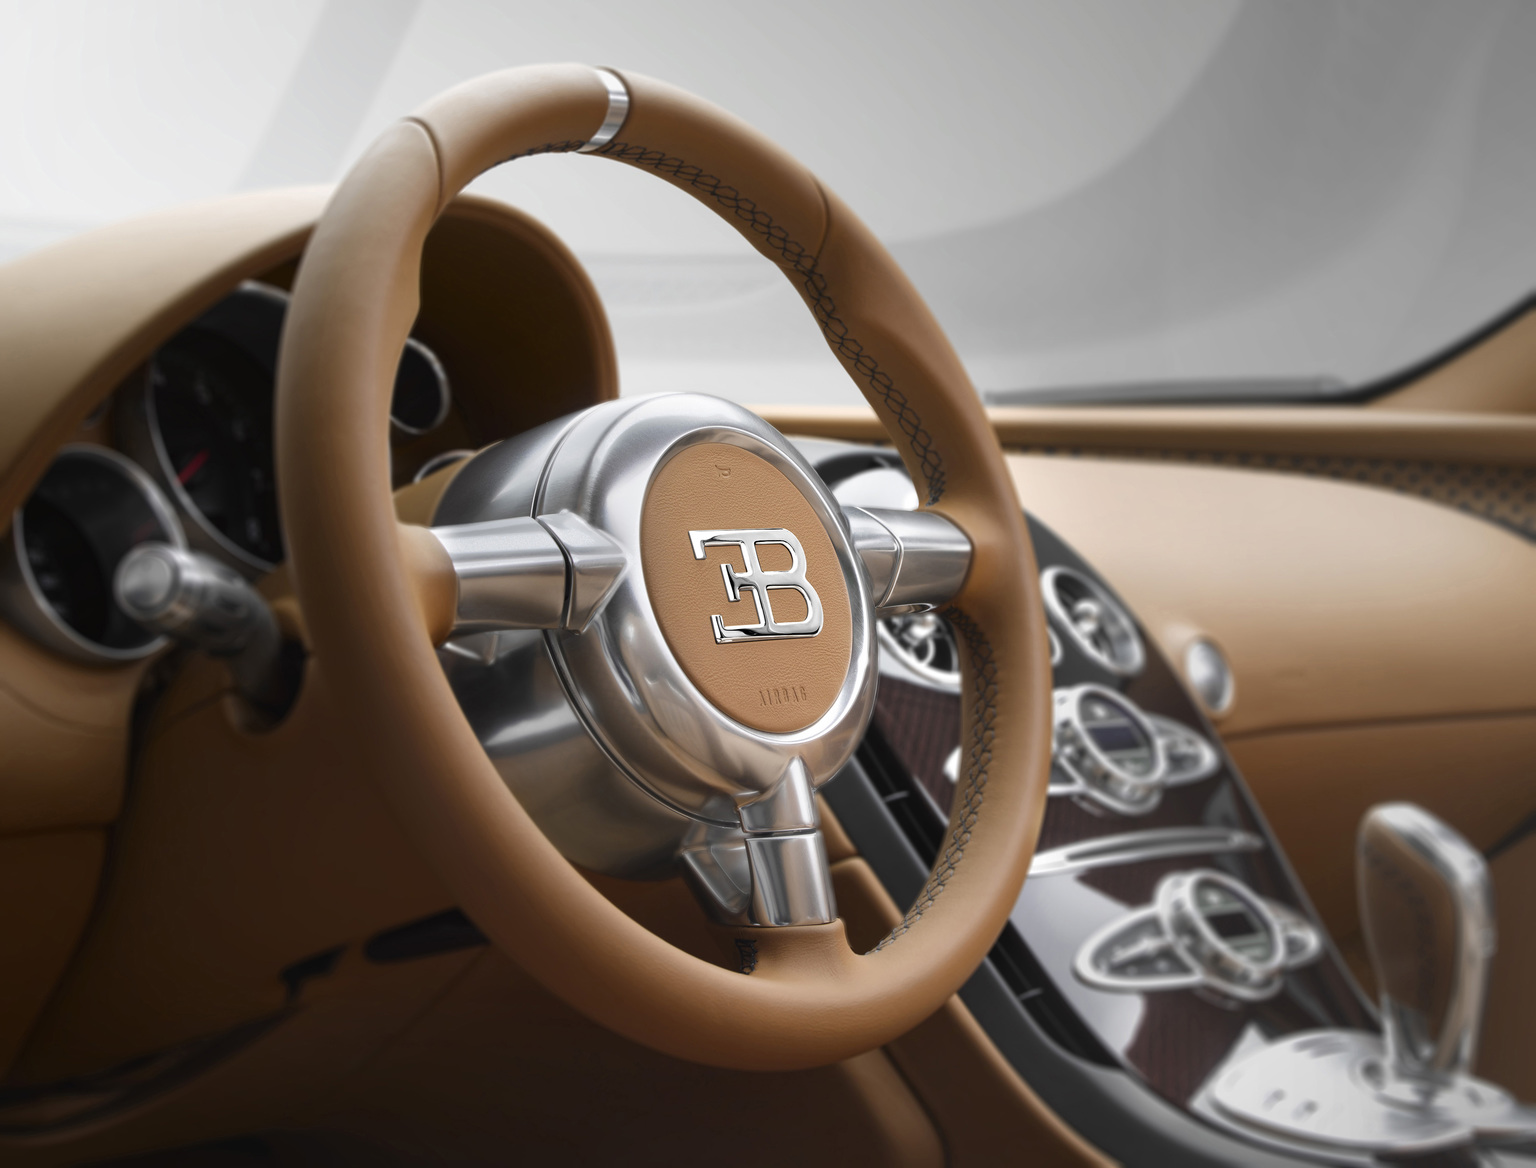 2014 Bugatti 16/4 Veyron Grand Sport Vitesse ‘Rembrandt Bugatti’